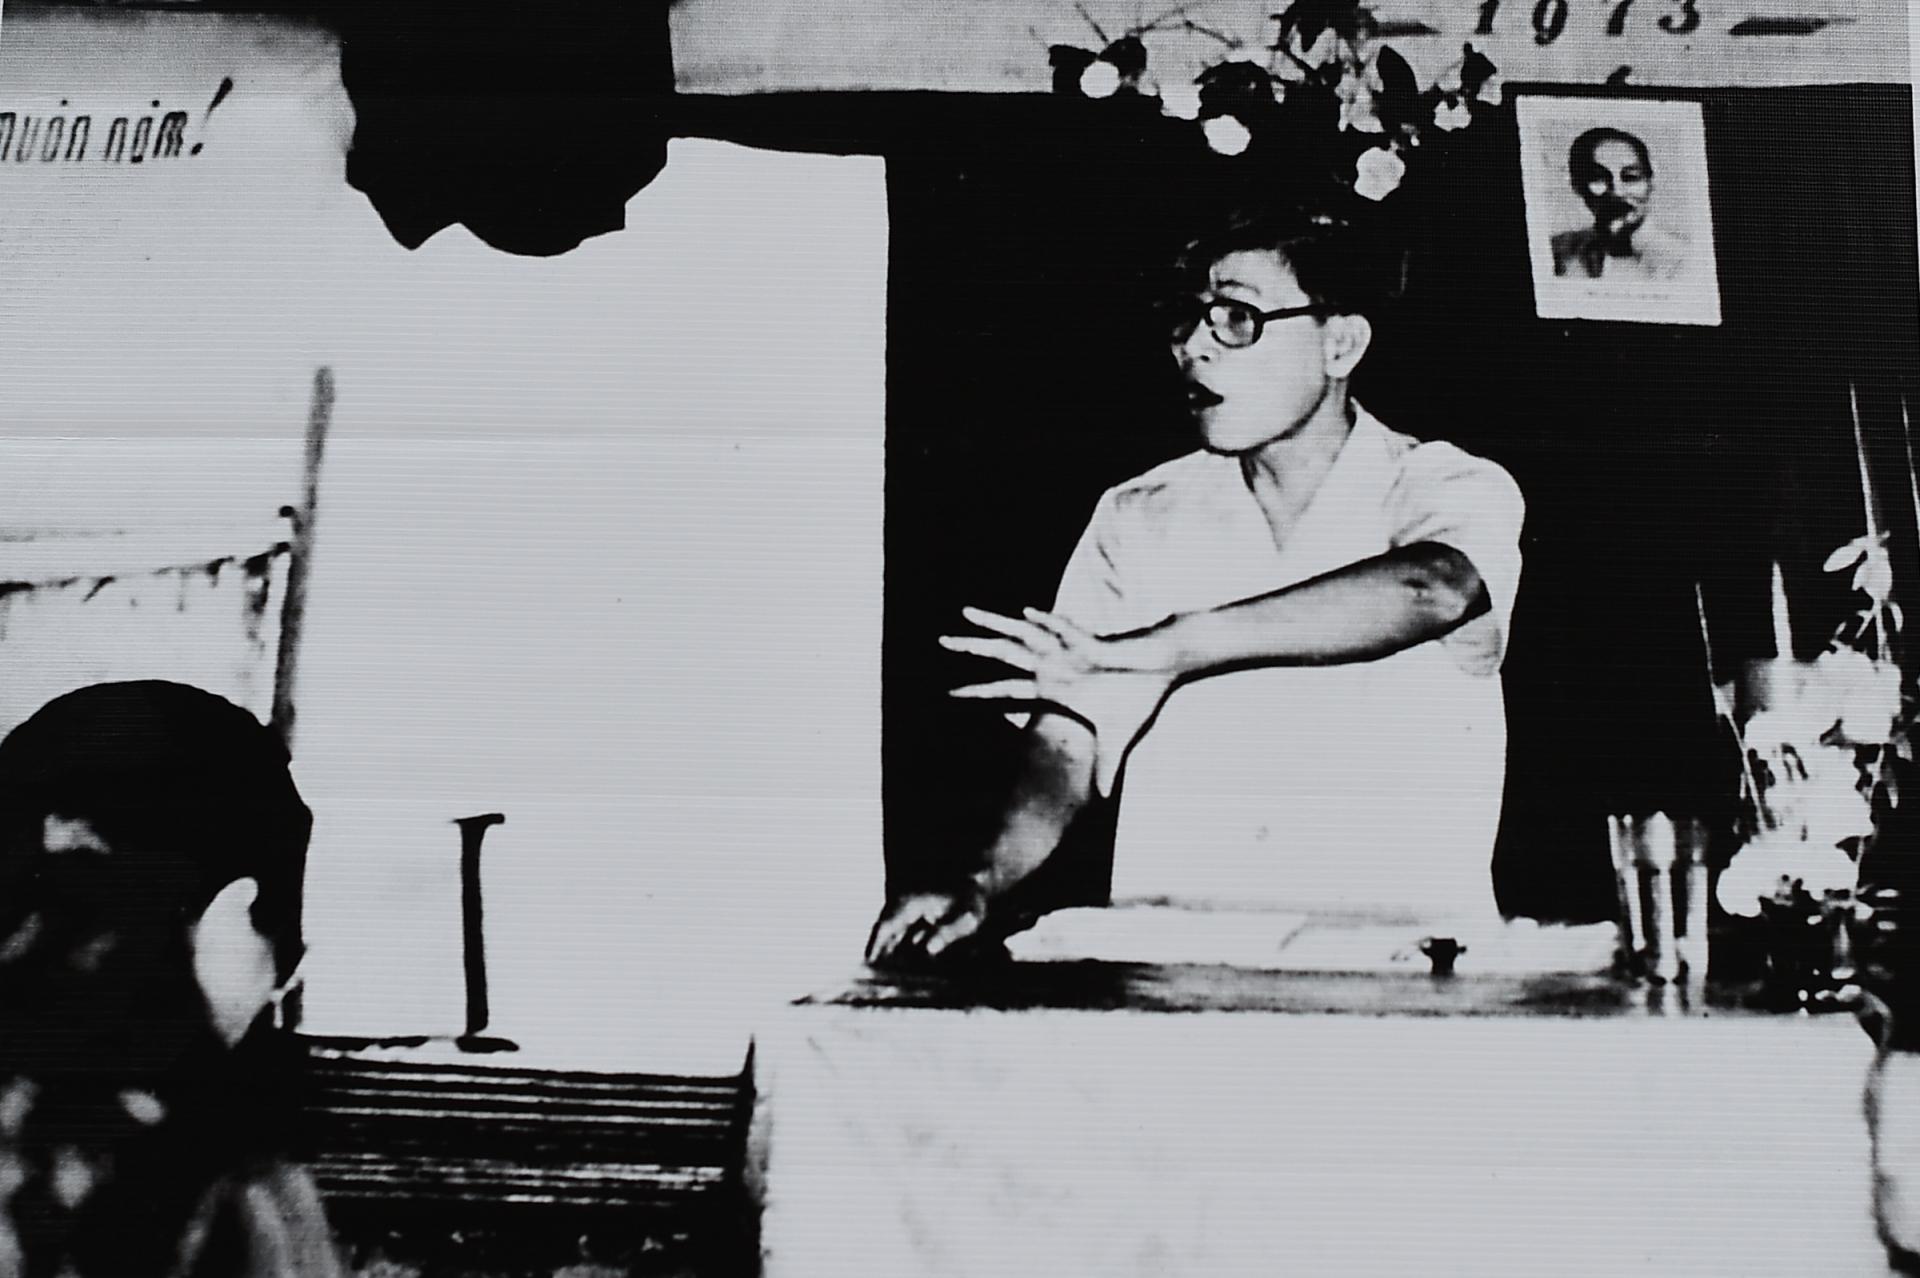 Ông Võ Văn Kiệt, Uỷ viên Ban Chấp hành Trung ương Đảng, Uỷ viên Thường vụ Trung ương Cục miền Nam, Bí thư Khu uỷ Khu 9, phổ biến kế hoạch chống địch phá hoại Hiệp định Paris, tháng 8/1973.